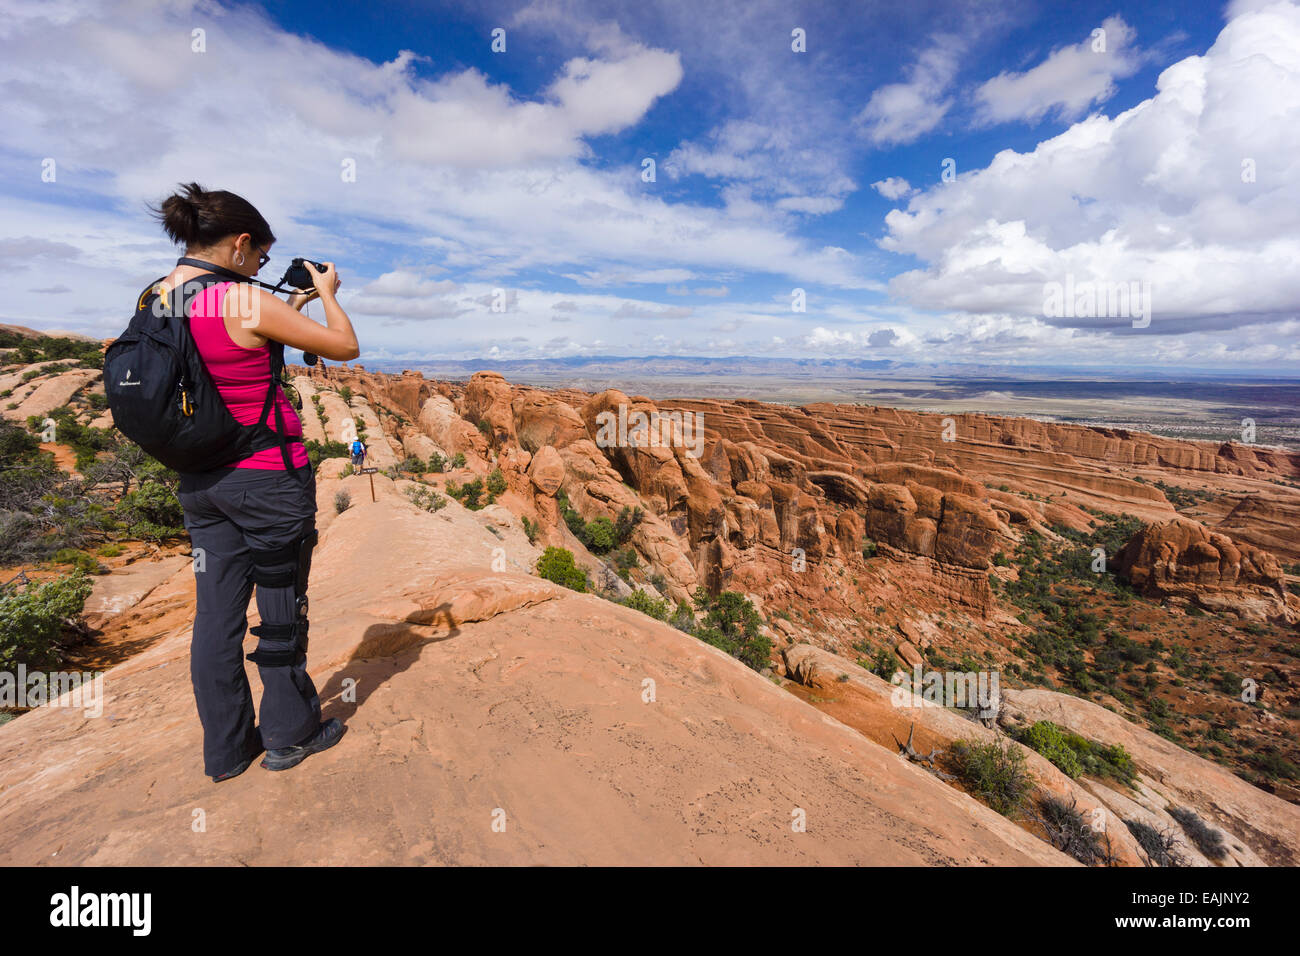 Female hiker prenant une photo à Devils Garden Trail. Arches National Park, Moab, Utah, USA. Banque D'Images